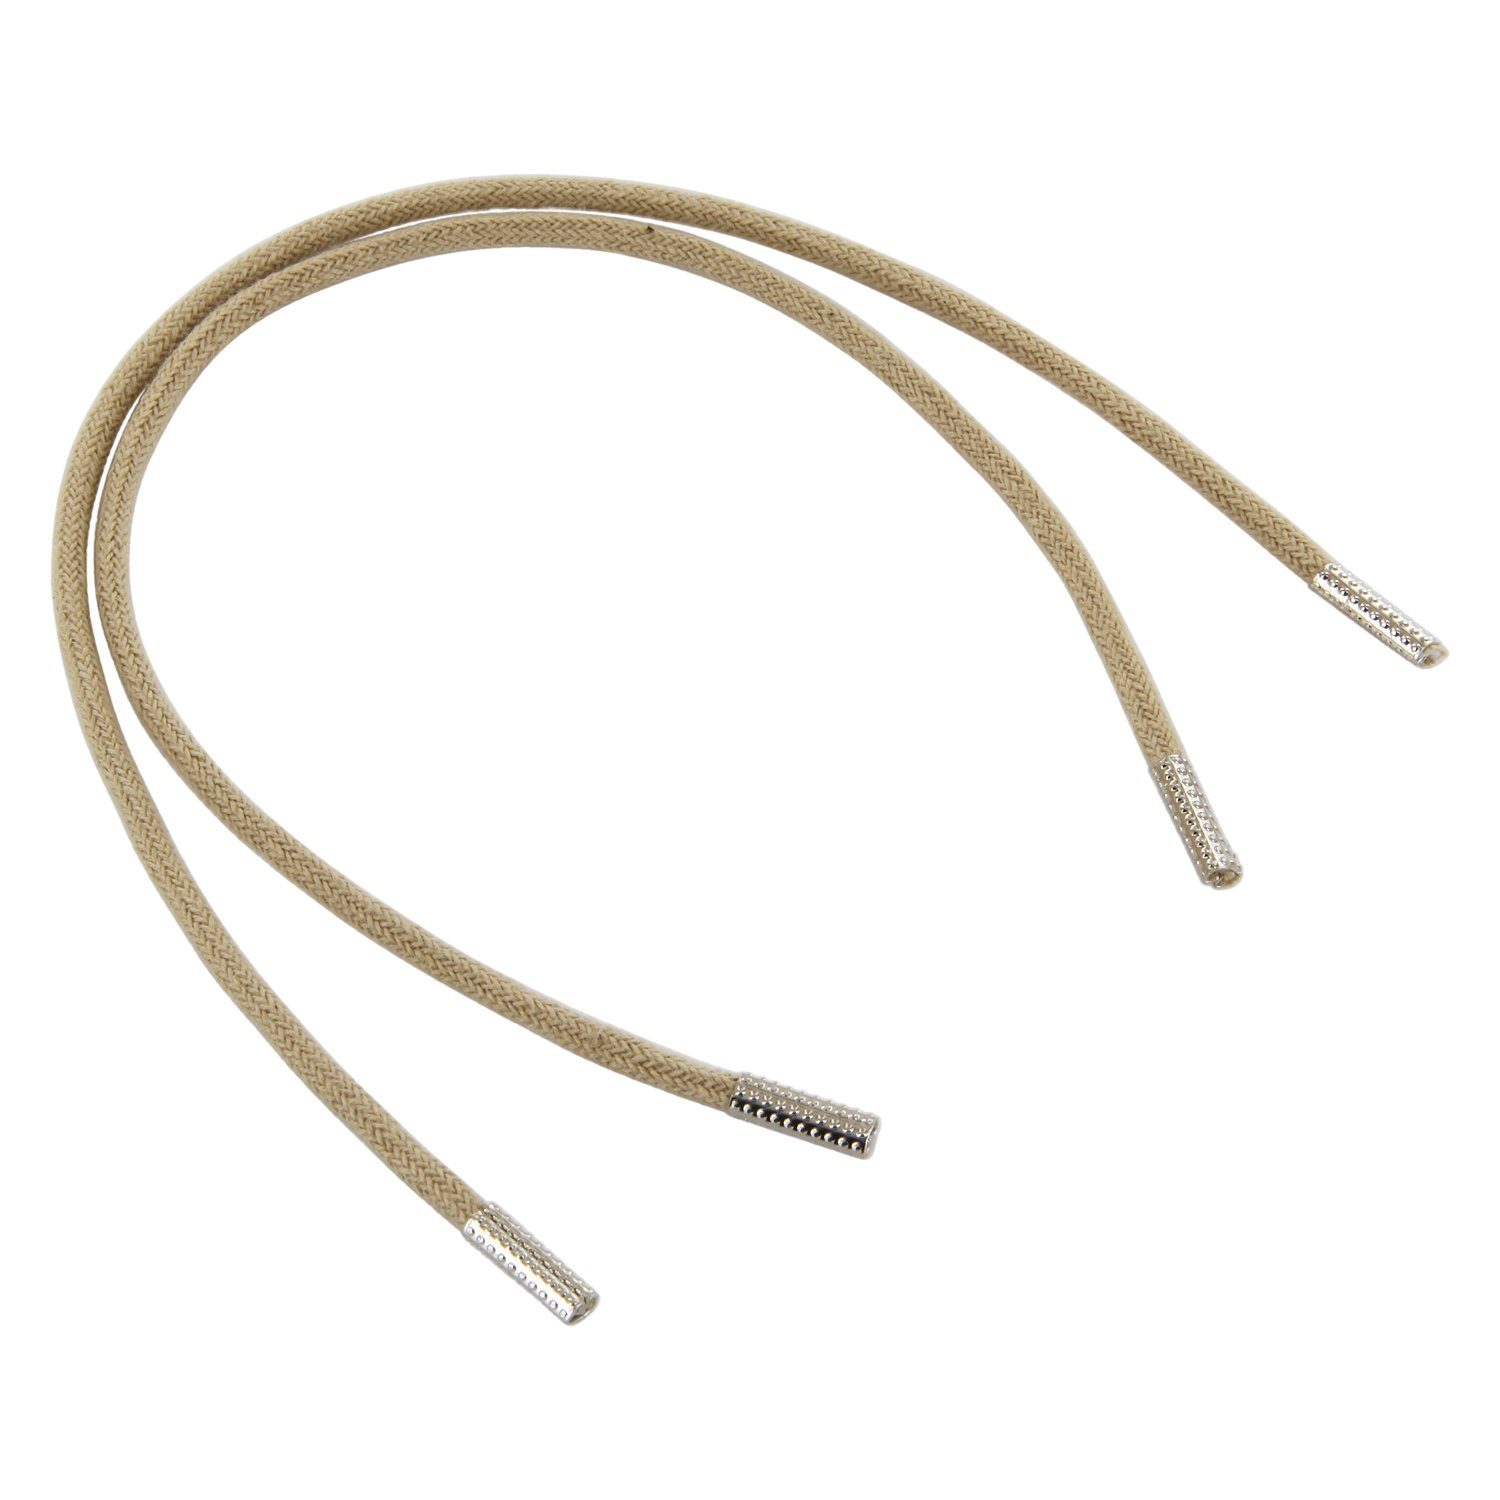 Rema Schnürsenkel Rema Schnürsenkel Creme - rund - ca. 2,5 mm dünn für Sie nach Wunschlänge geschnitten und mit Metallenden versehen